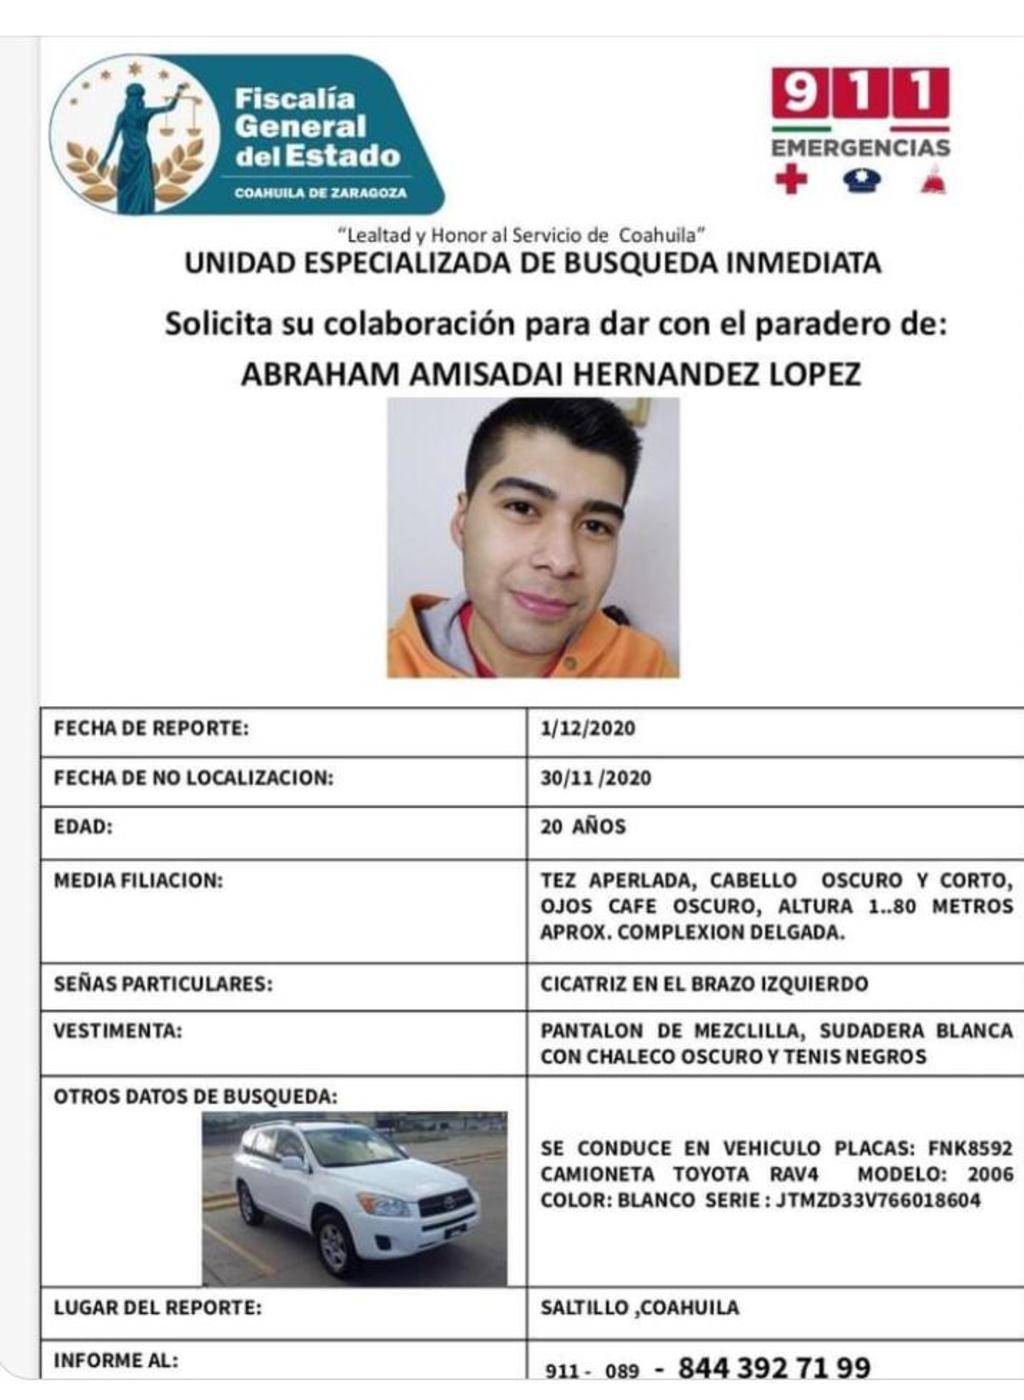 Se trata de Abraham Amisadai Hernández López, quien se encuentra desaparecido desde el pasado 30 de noviembre en la entidad.